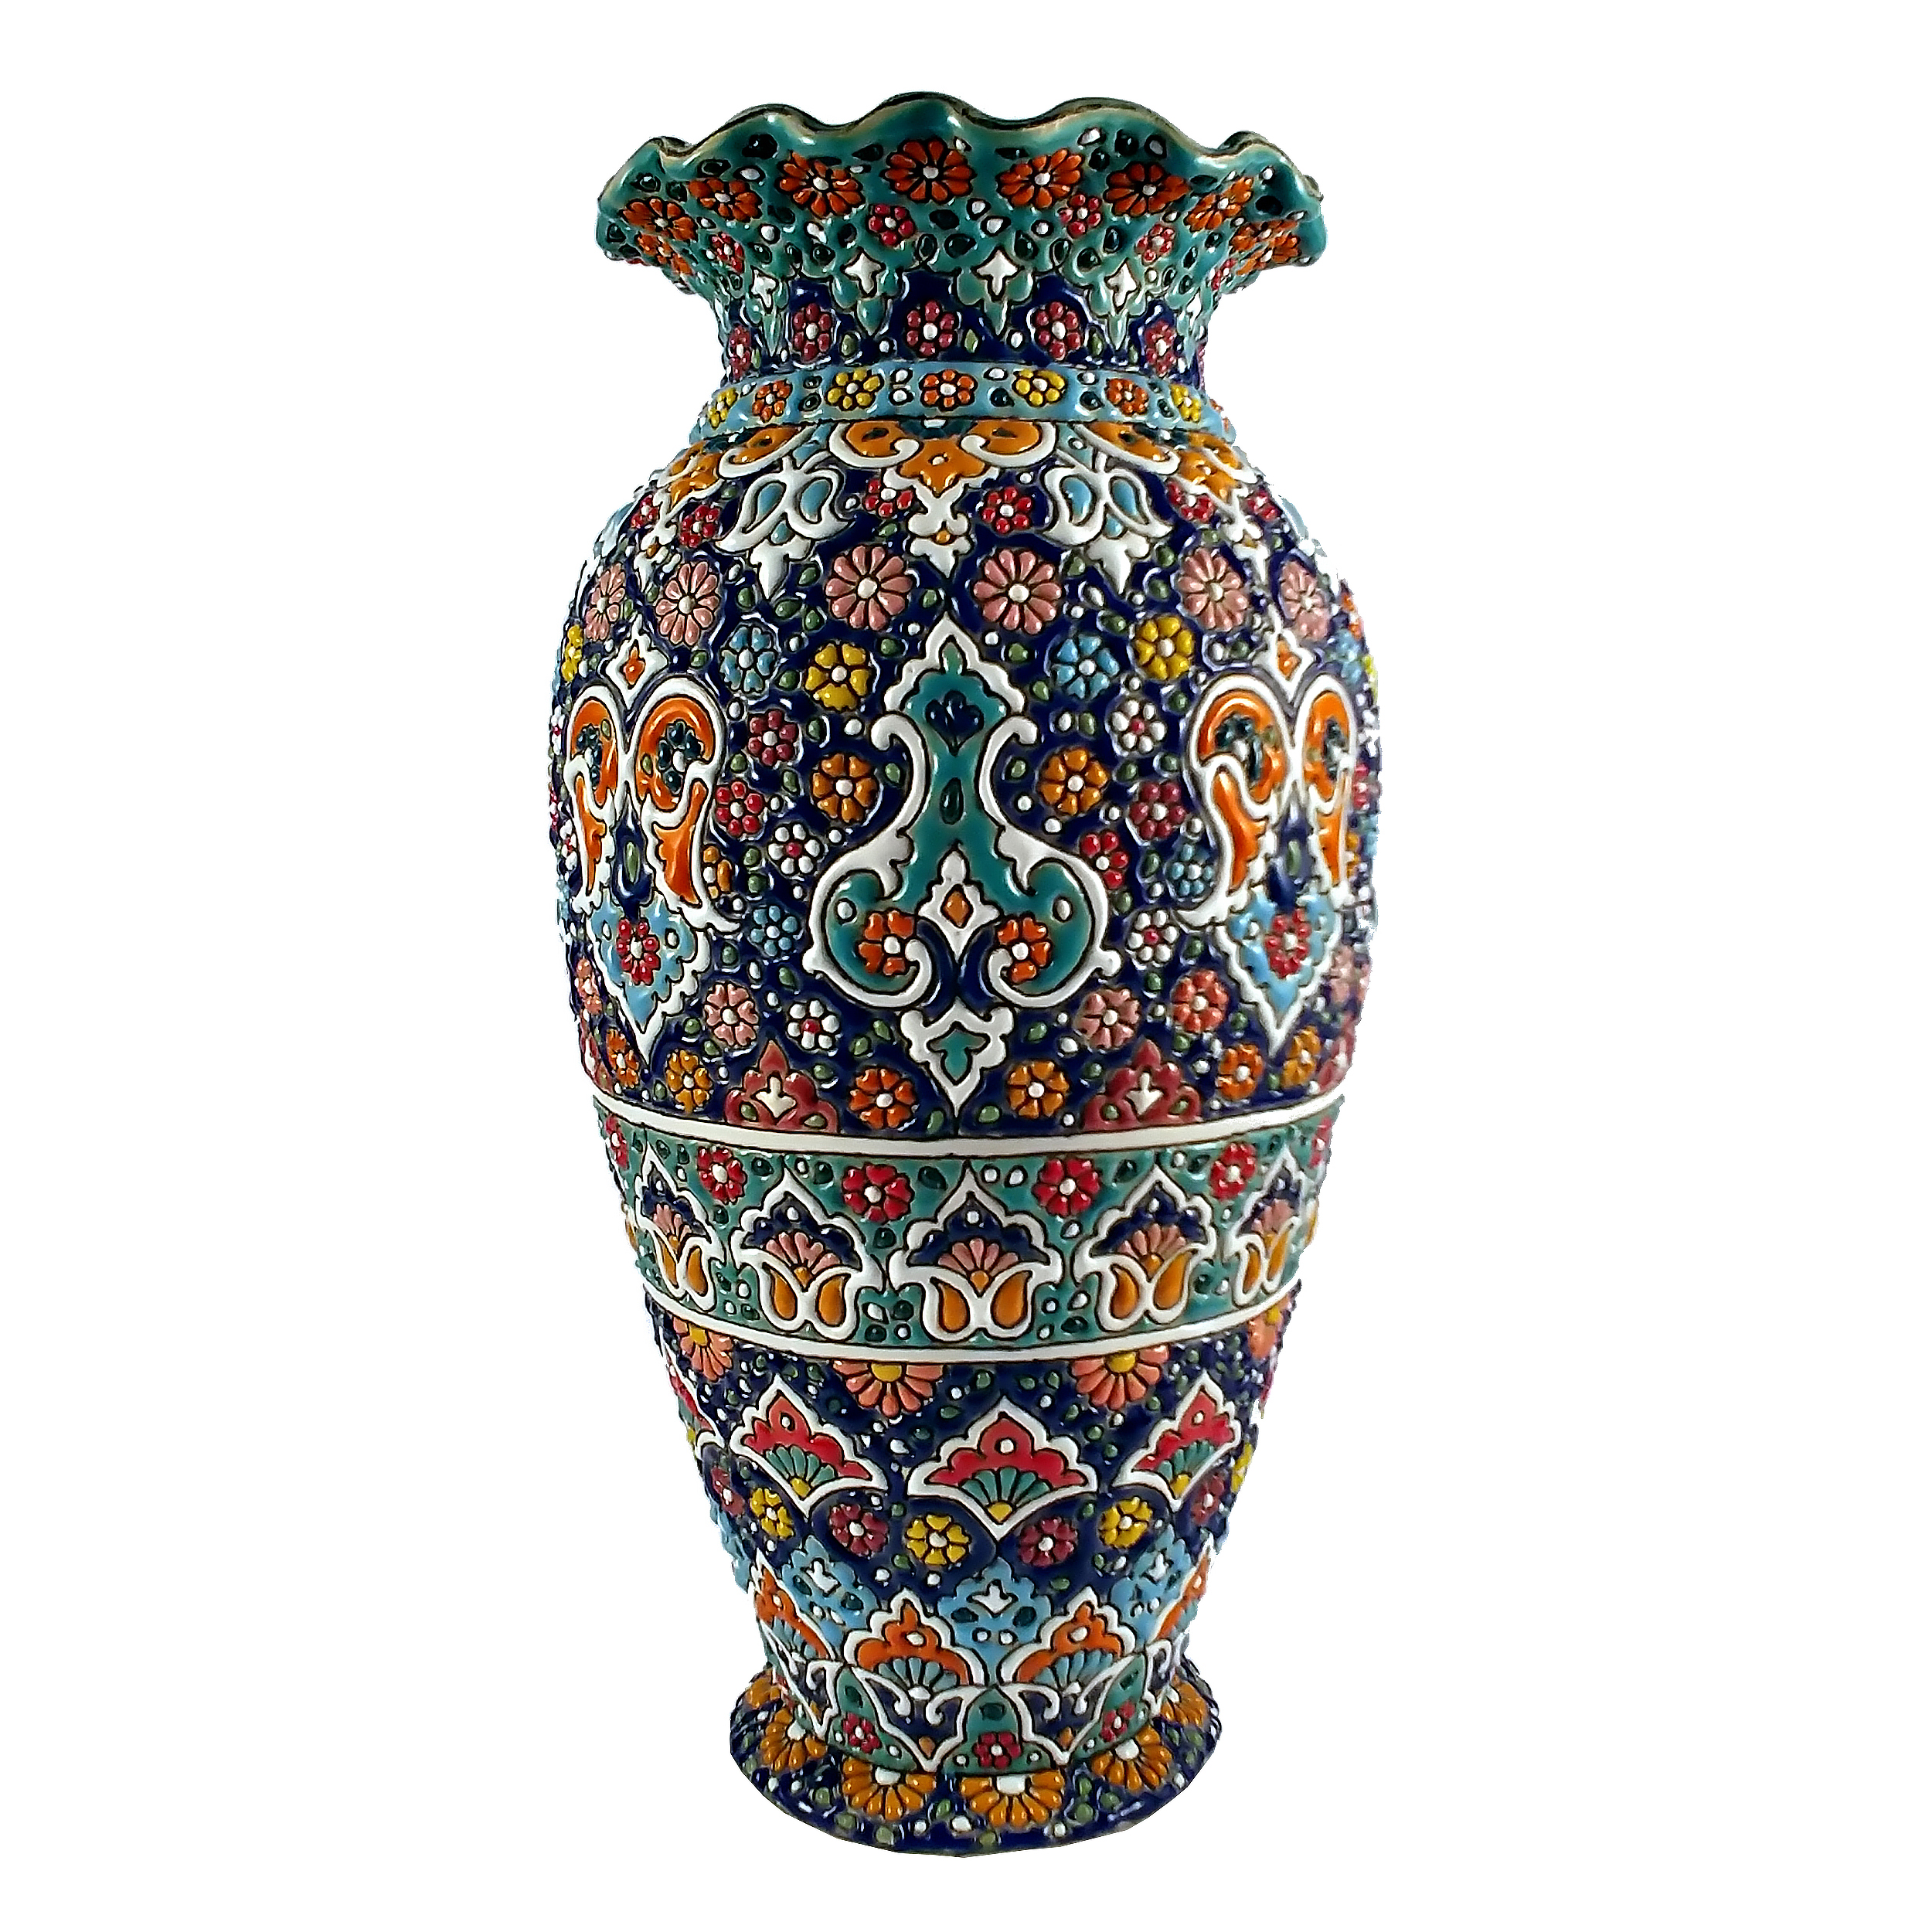 Earthen Enamel vase, code s08 